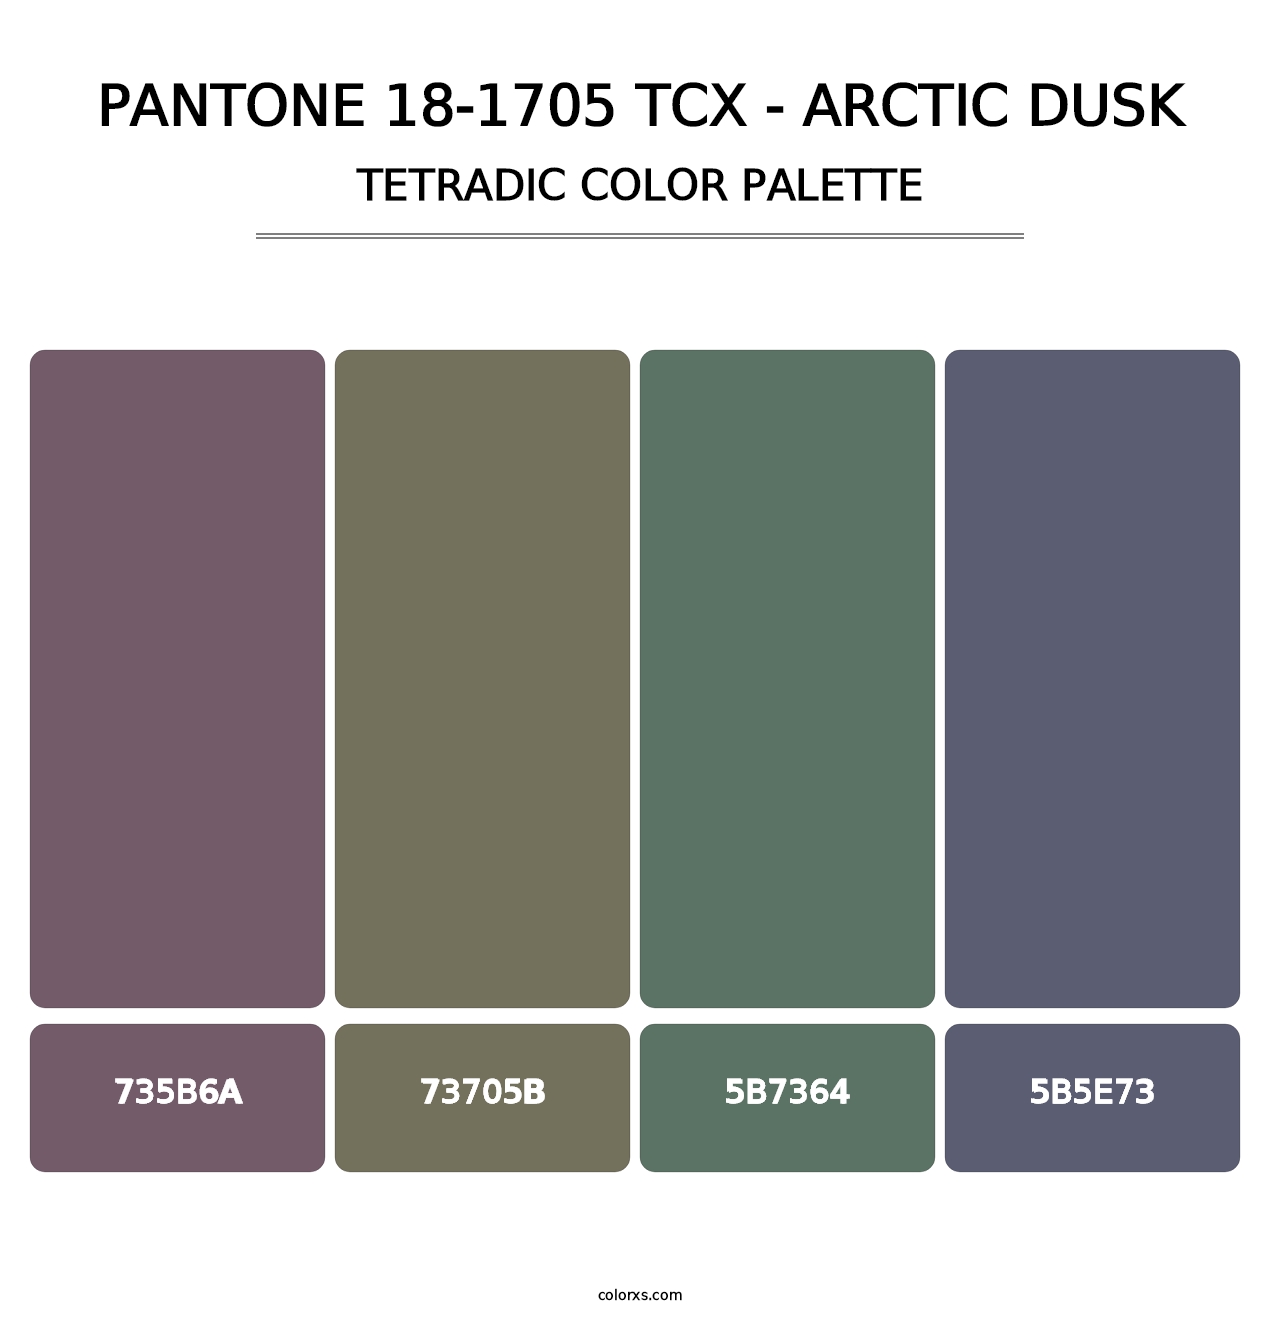 PANTONE 18-1705 TCX - Arctic Dusk - Tetradic Color Palette